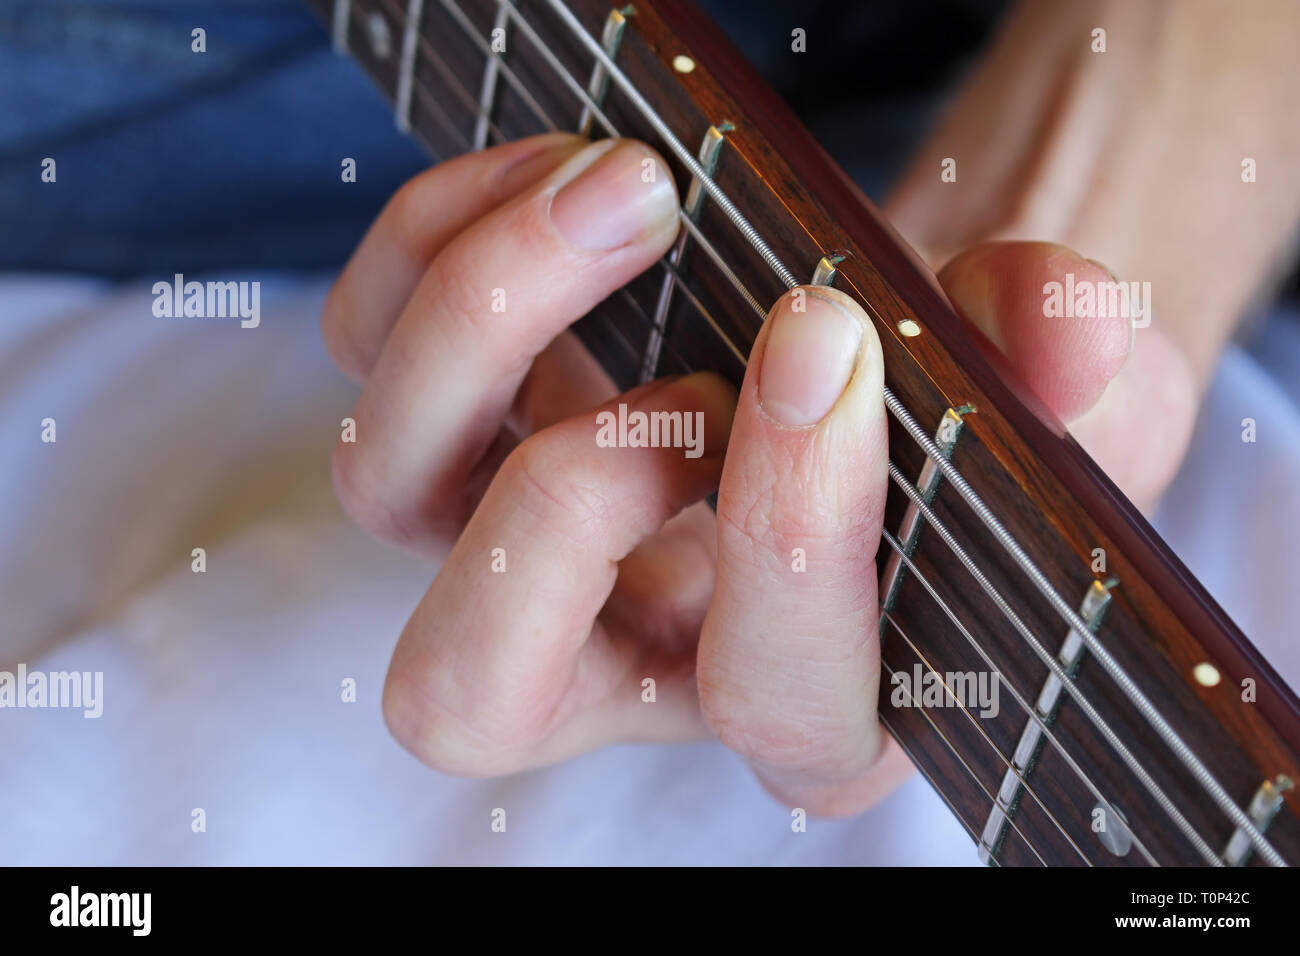 Von Guitar Player Hand bilden einen Akkord, der auf dem Griffbrett der Gitarre. Stockfoto